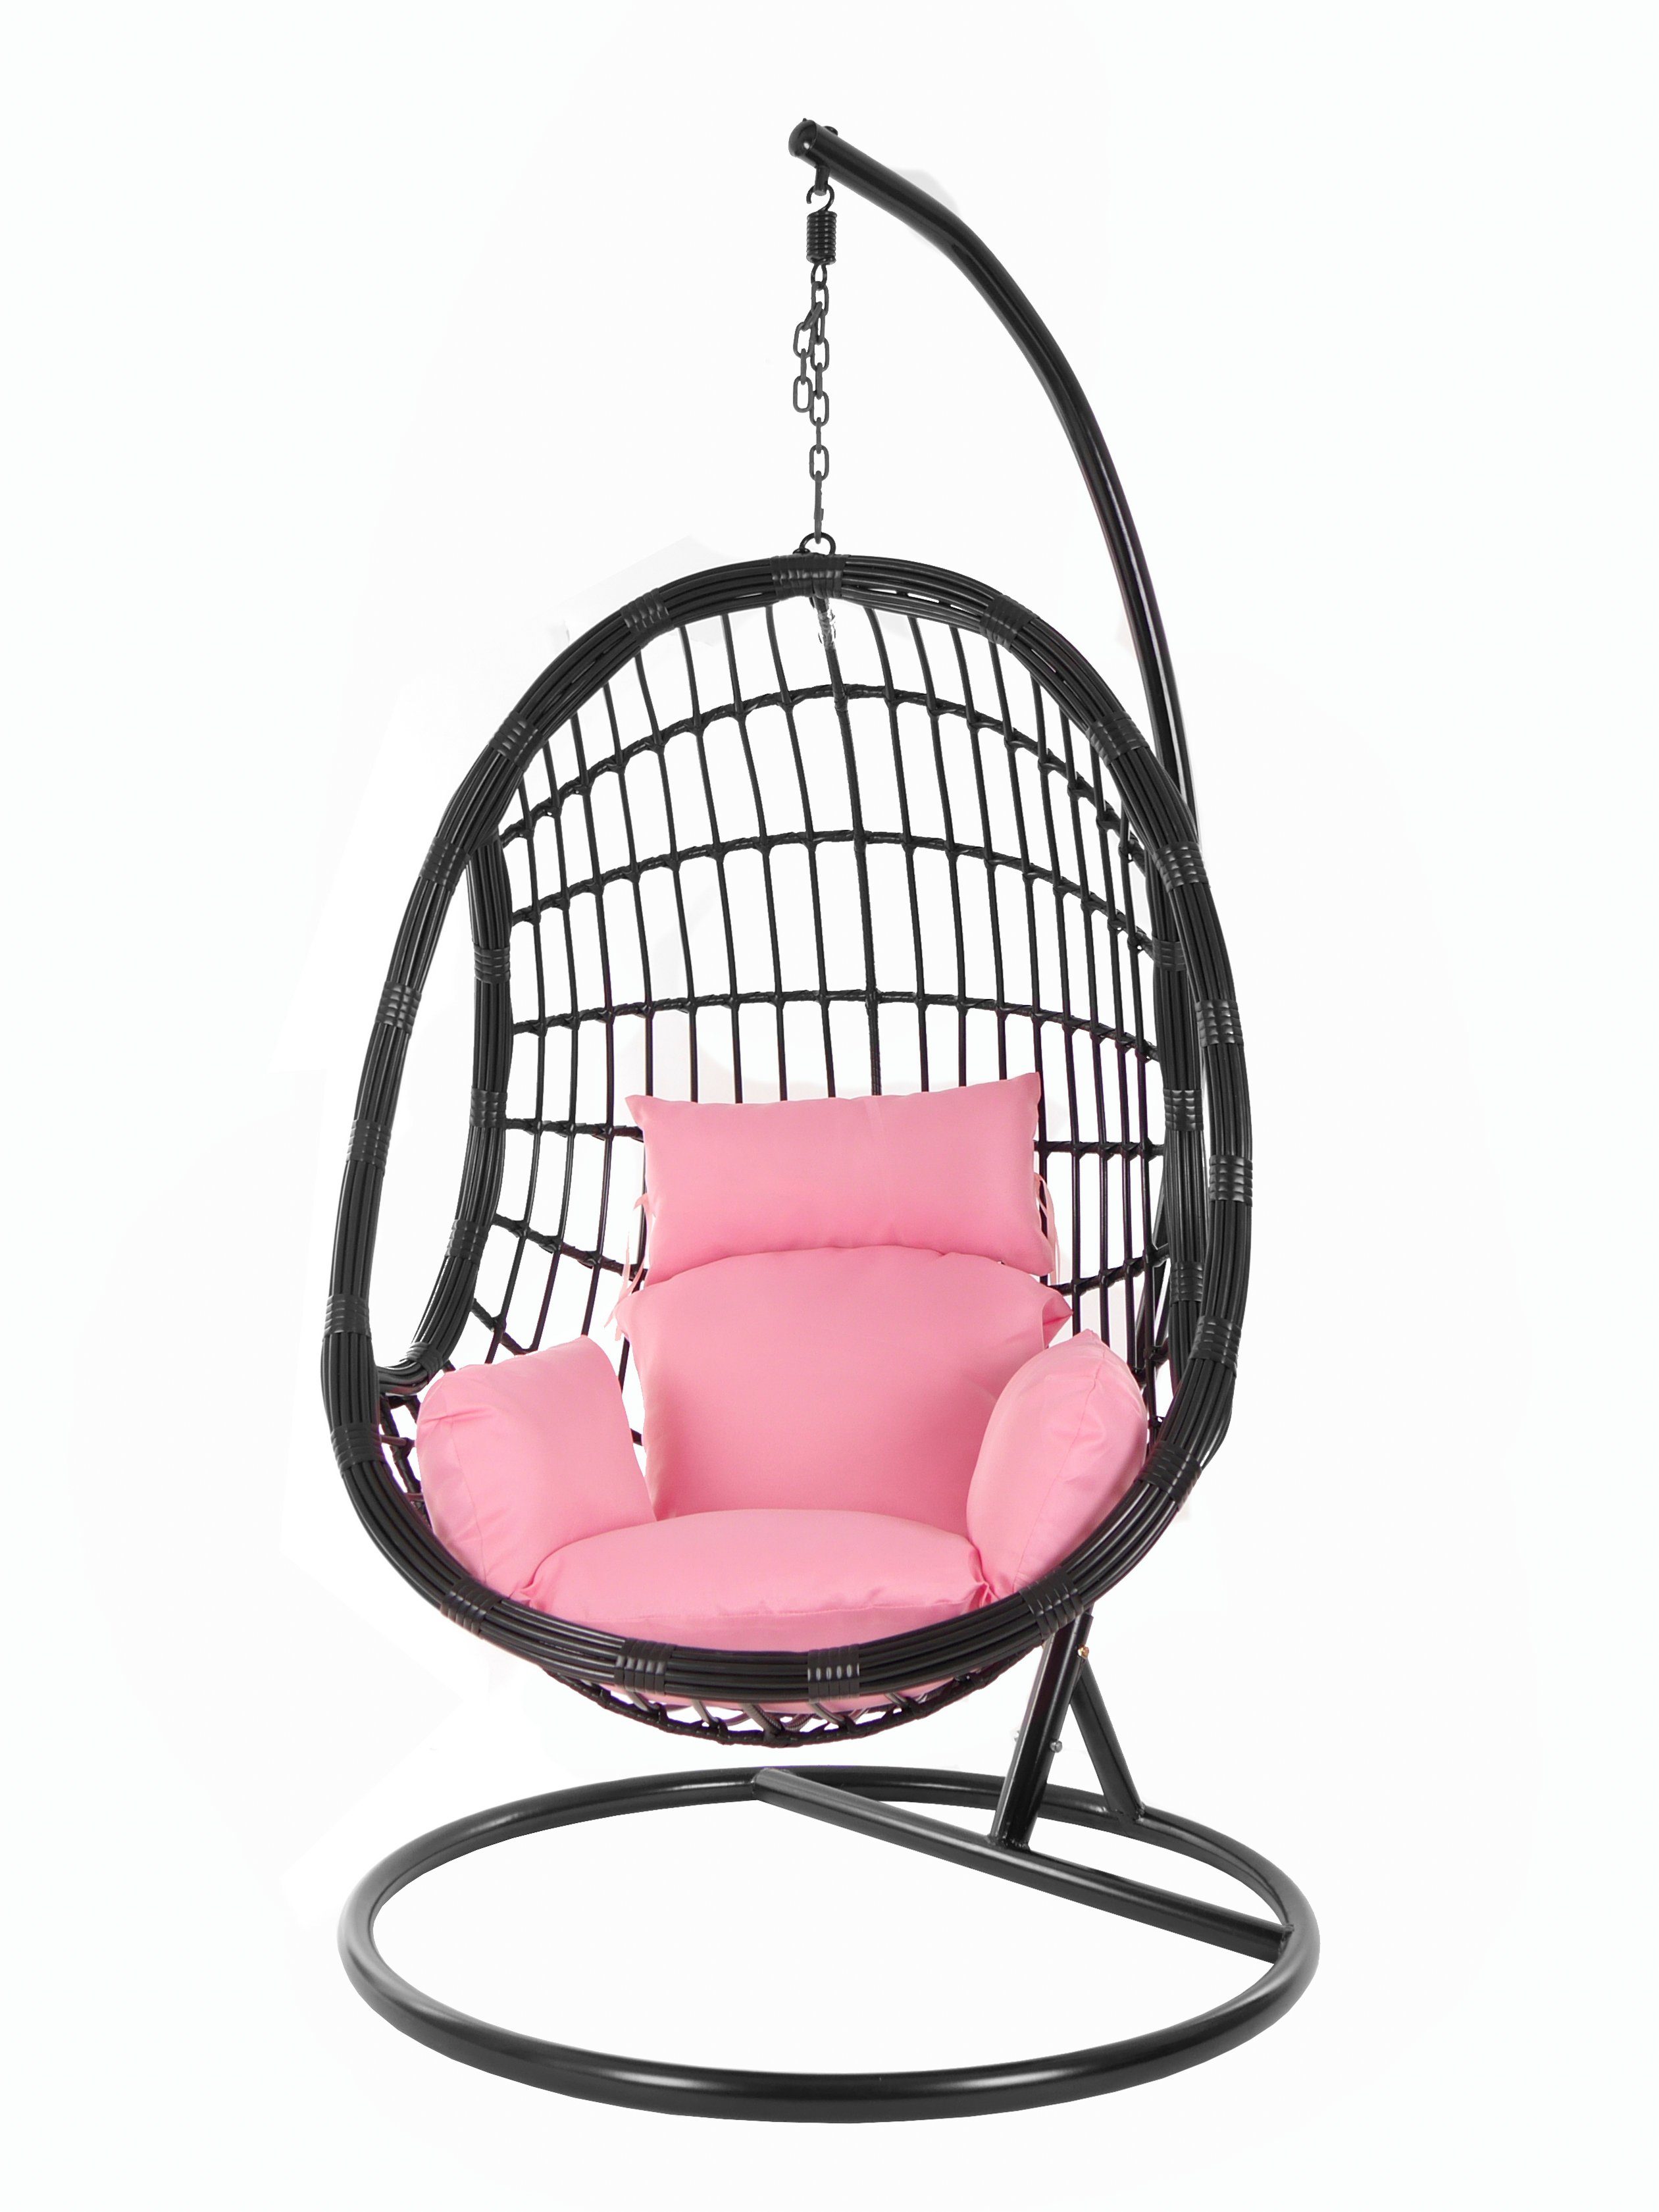 KIDEO Hängesessel Kissen, PALMANOVA Chair, Schwebesessel, Nest-Kissen Swing (3002 Hängesessel rosa lemonade) black, Gestell und mit